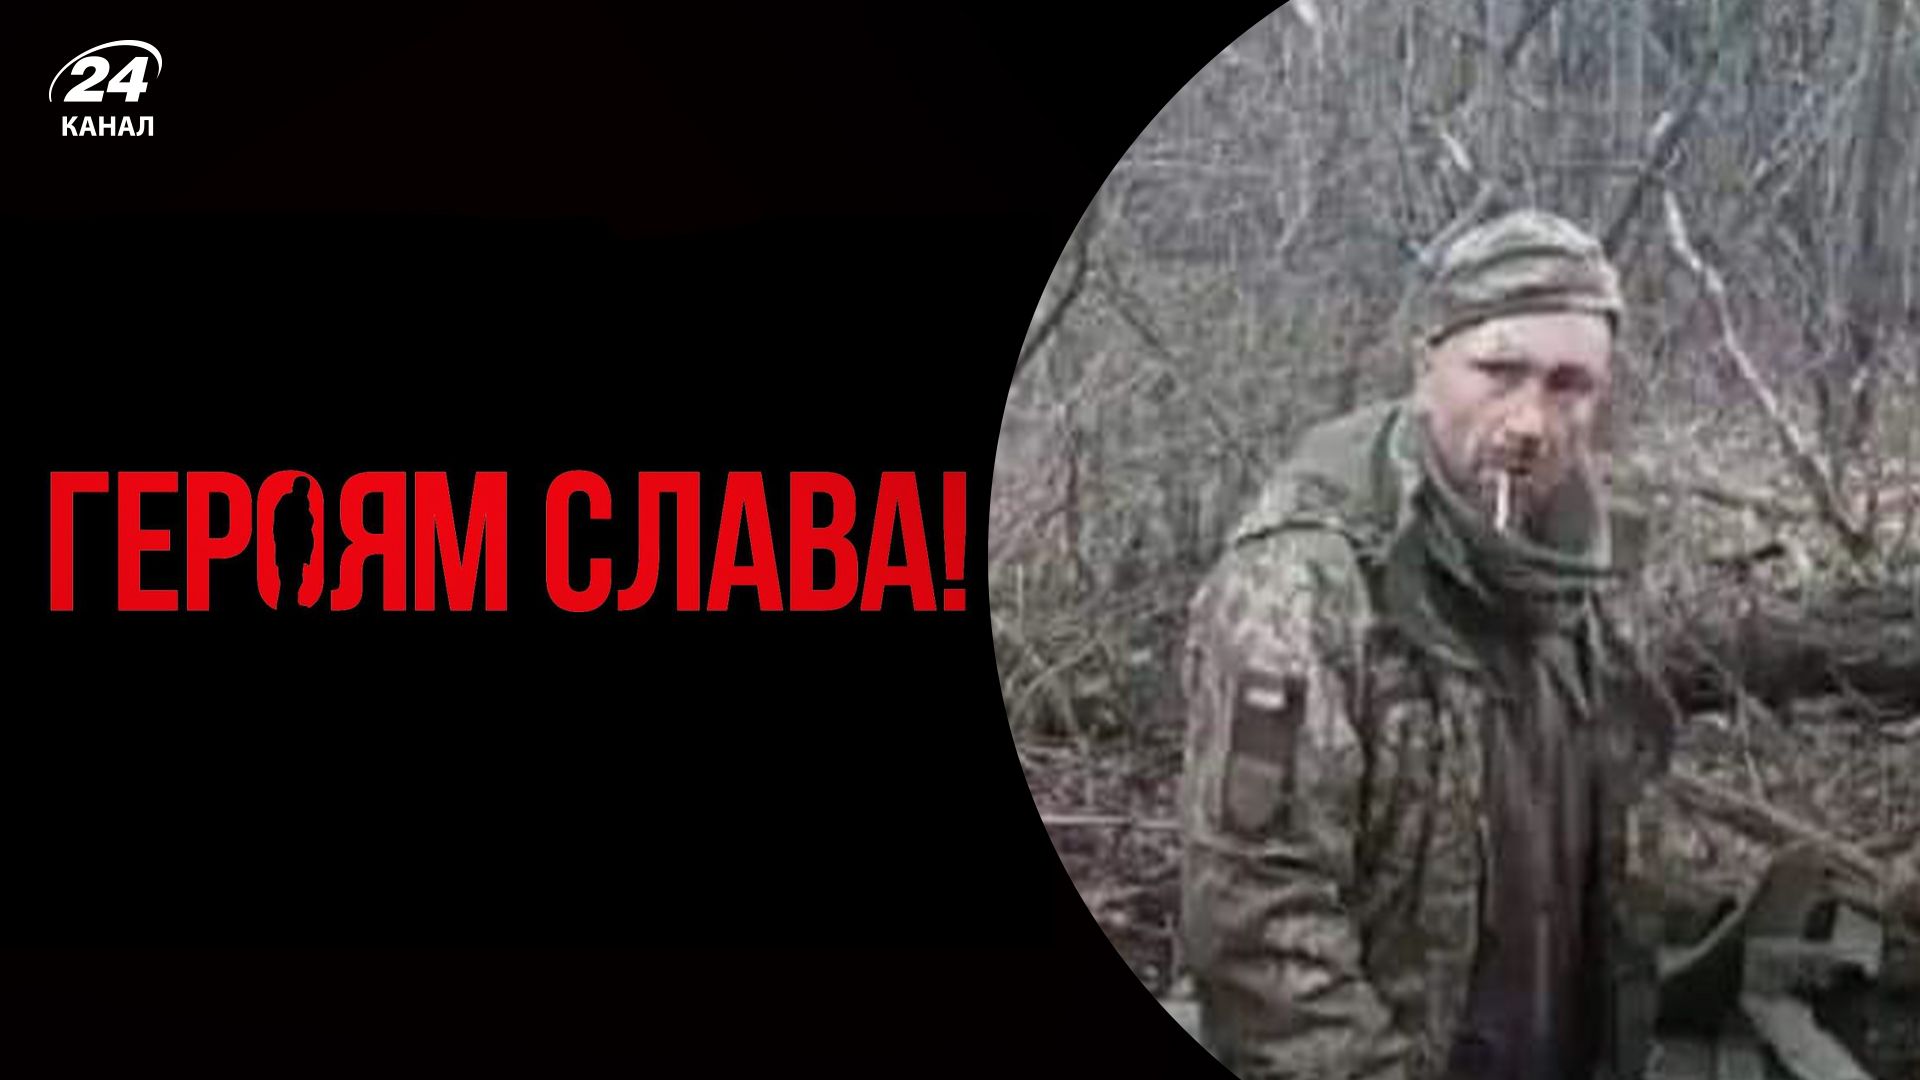 Оккупанты дерзко и жестоко расстреляли украинского пленника: все, что известно о трагедии - 24 Канал